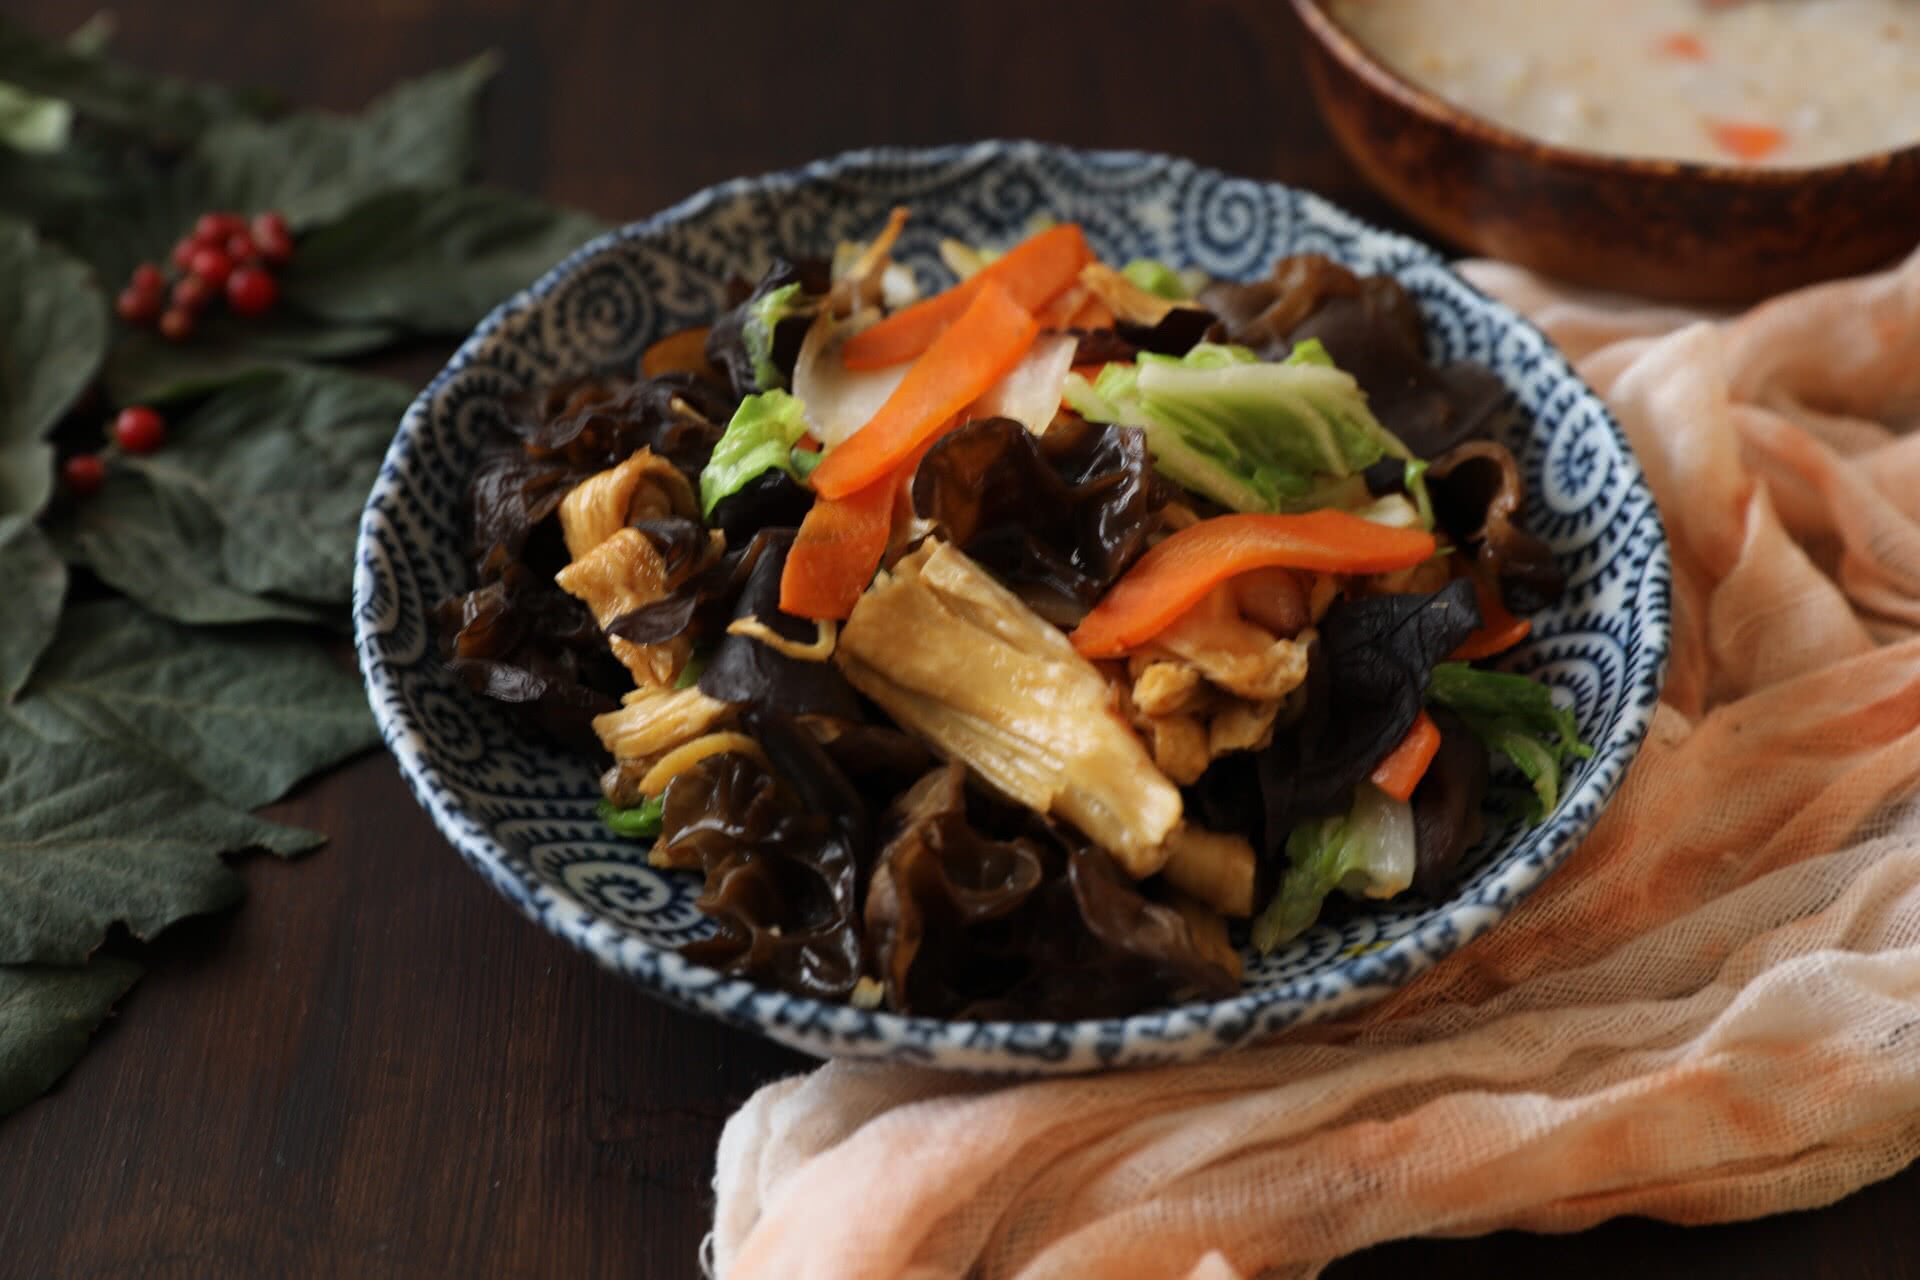 Yichen 發表的 炒青菜鮮蔬-木耳炒萵苣 食譜 - Cookpad